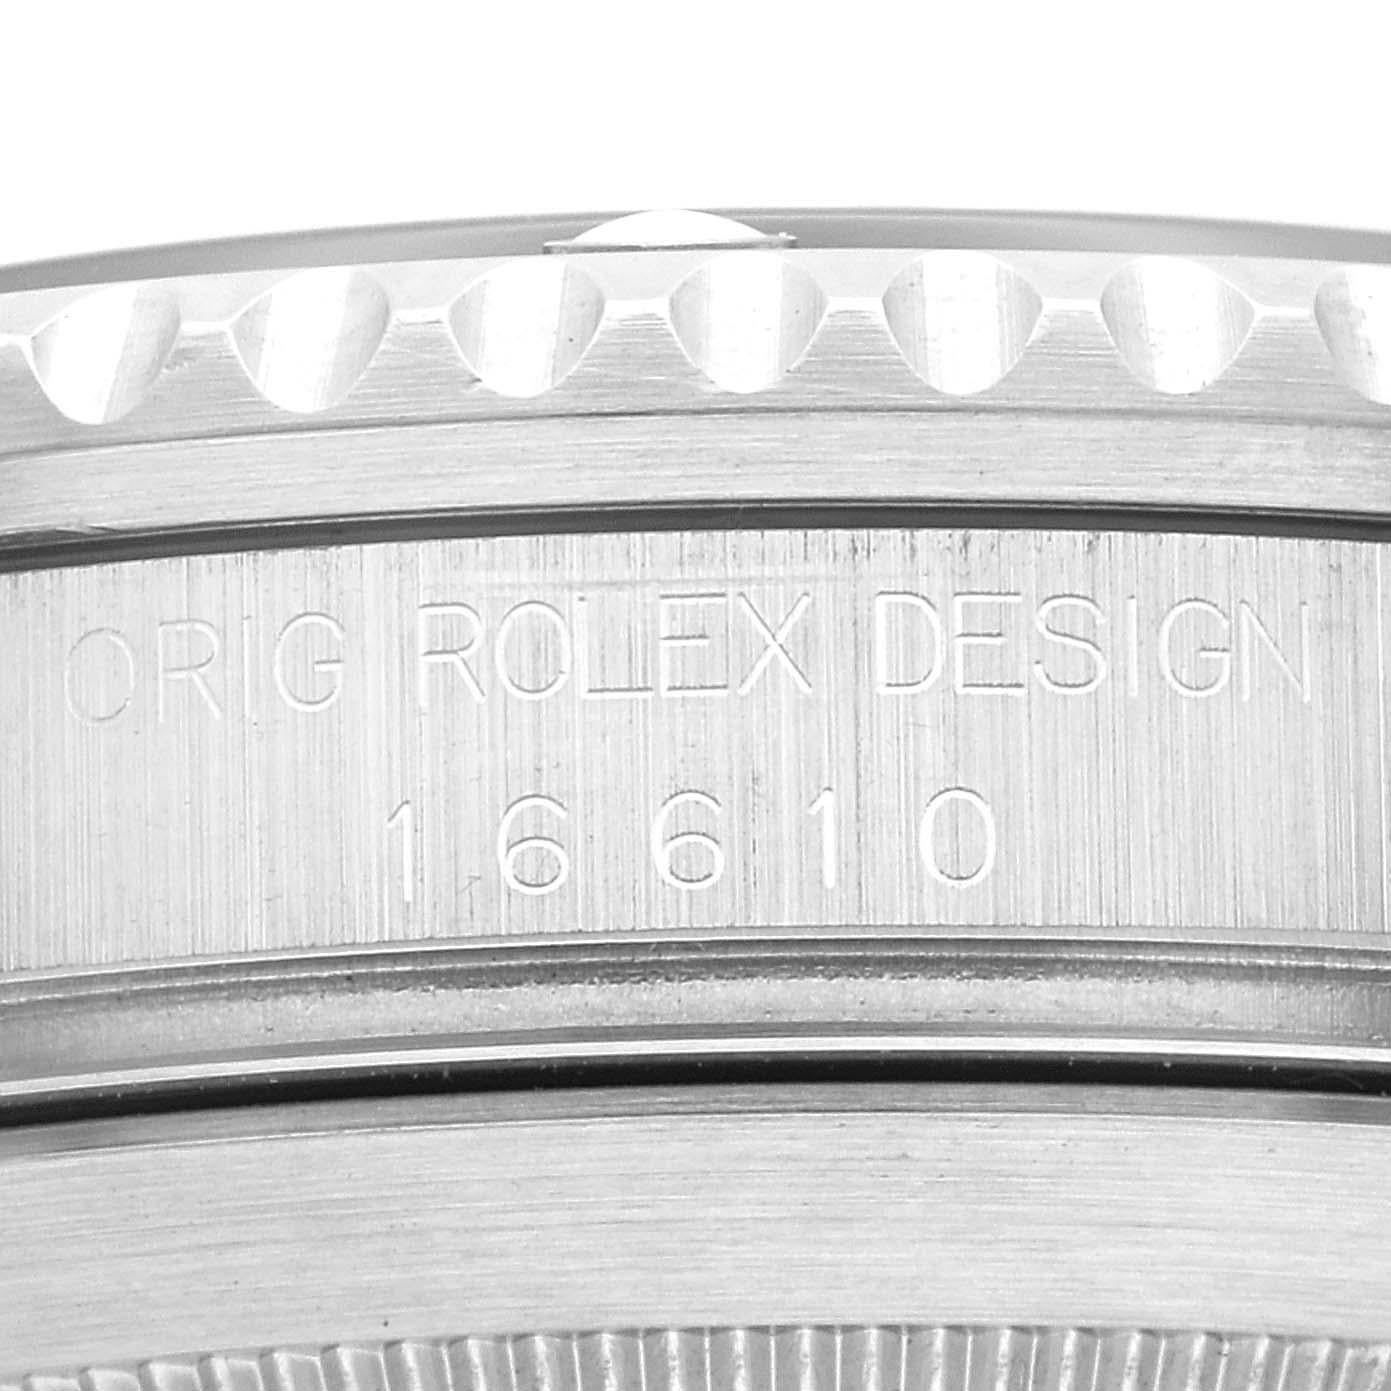 Rolex Submariner Datum schwarzes Zifferblatt Stahl Herrenuhr 16610 Box Papiere. Offiziell zertifiziertes Chronometerwerk mit automatischem Aufzug. Gehäuse aus Edelstahl mit einem Durchmesser von 40.0 mm. Rolex Logo auf der Krone. Spezielle einseitig